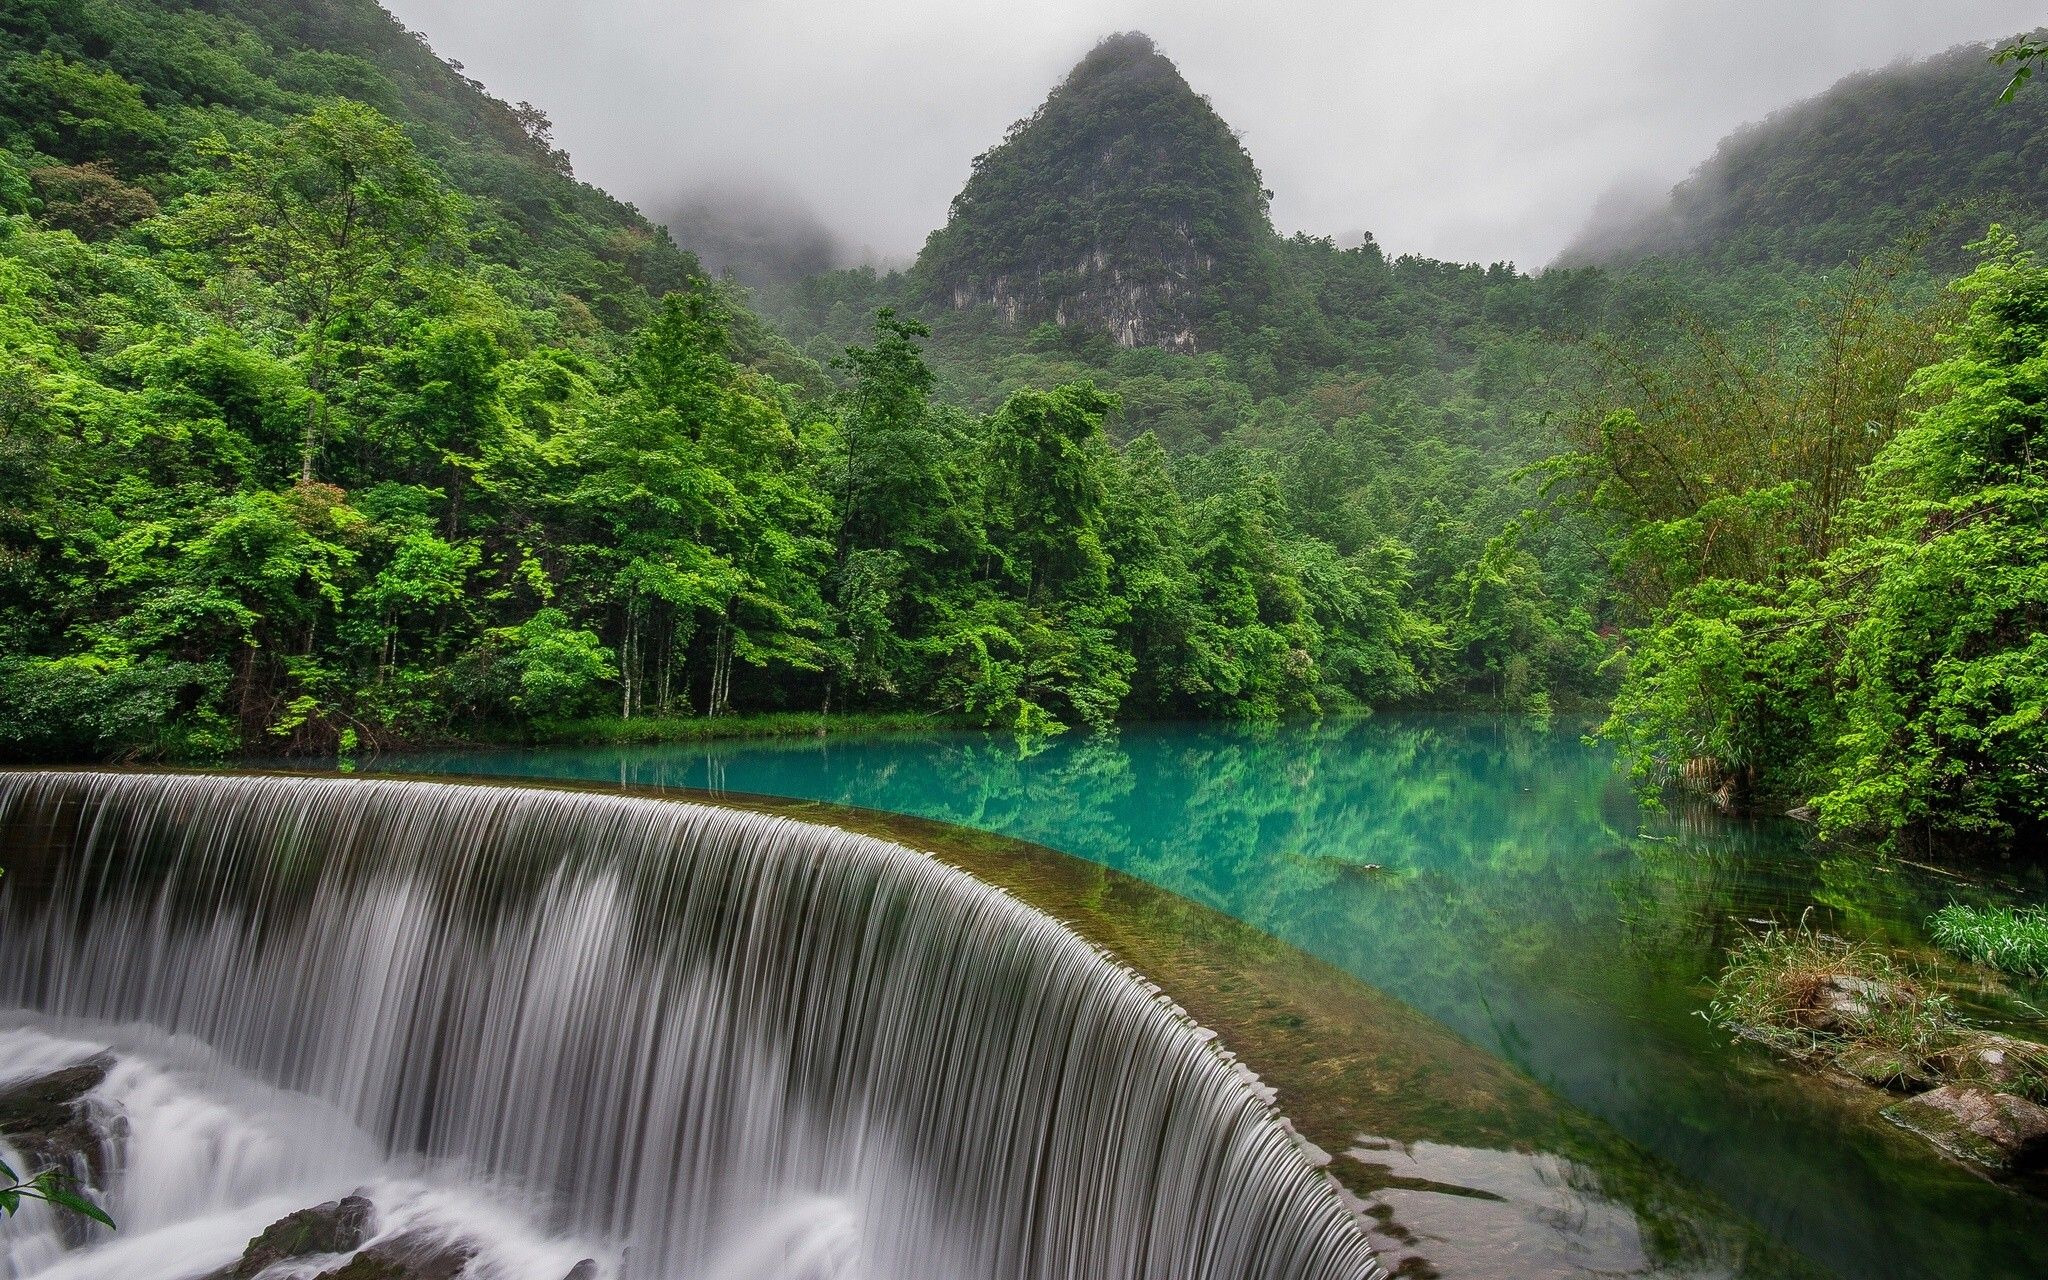 آبشار عظیم منتهی به رودخانه درون جنگل در یک قاب زیبا 